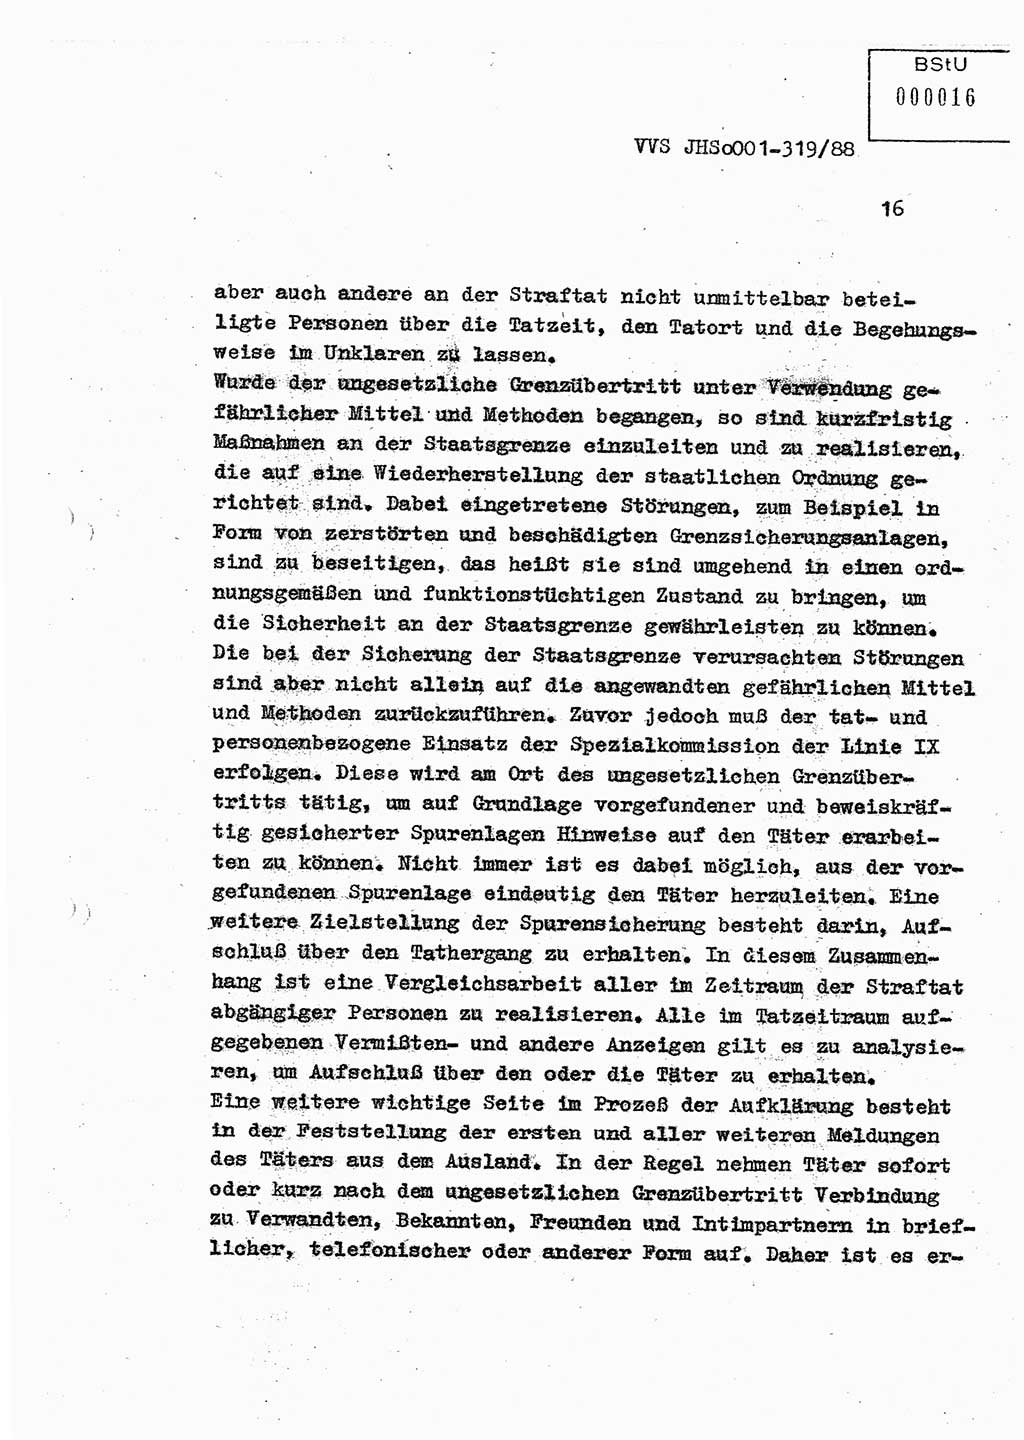 Diplomarbeit Offiziersschüler Holger Zirnstein (HA Ⅸ/9), Ministerium für Staatssicherheit (MfS) [Deutsche Demokratische Republik (DDR)], Juristische Hochschule (JHS), Vertrauliche Verschlußsache (VVS) o001-319/88, Potsdam 1988, Blatt 16 (Dipl.-Arb. MfS DDR JHS VVS o001-319/88 1988, Bl. 16)